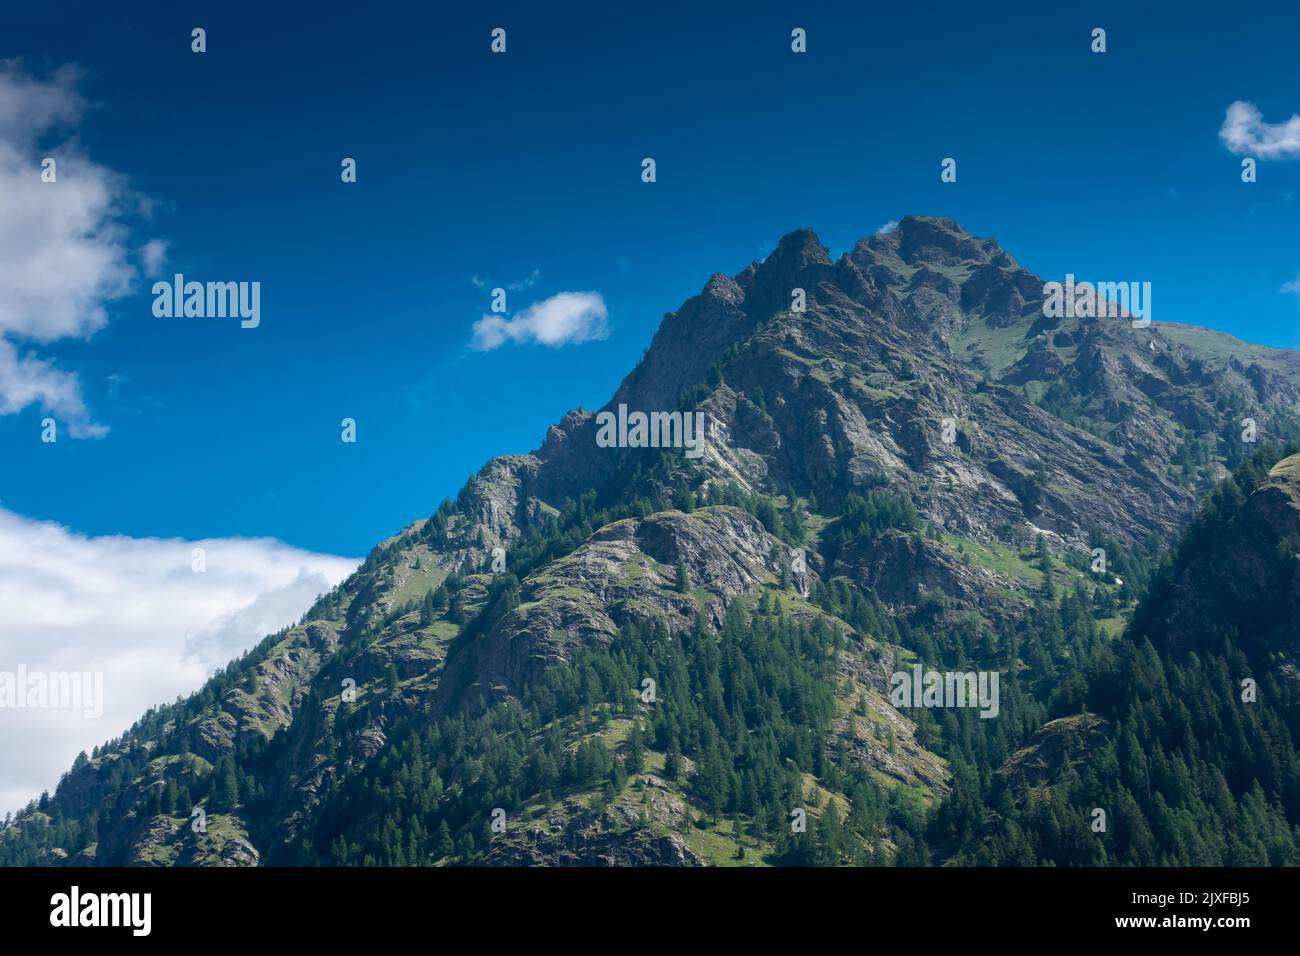 Montagnes de Gressoney Saint Jean dans les Alpes italiennes Banque D'Images